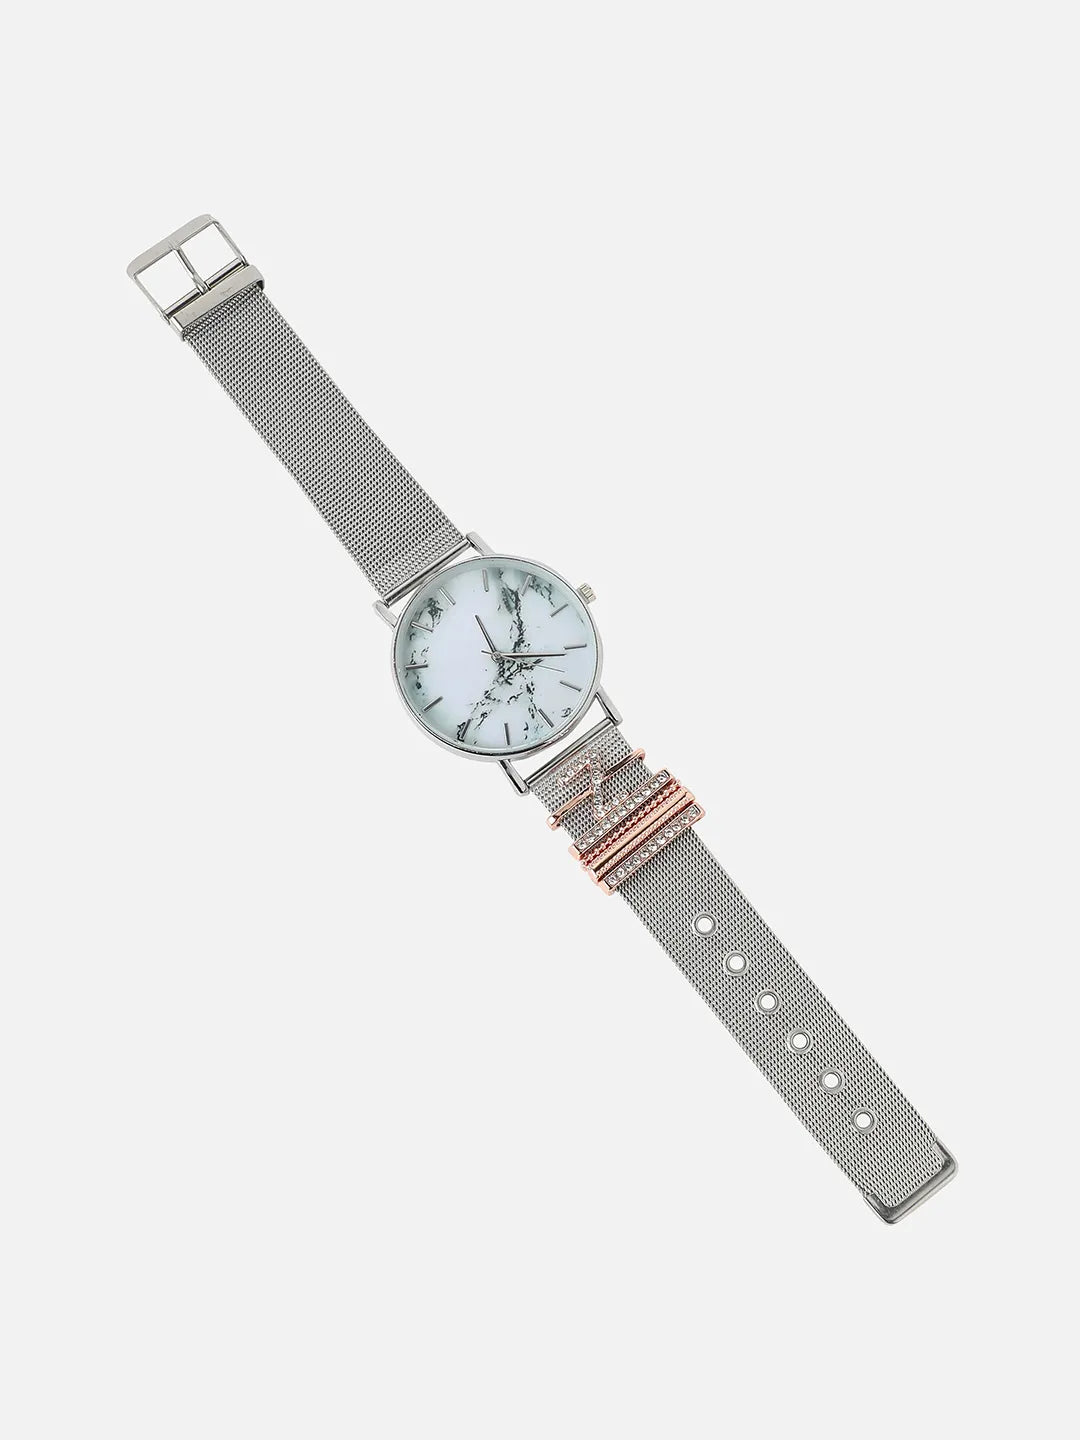 Round Analog Watch With Z Initial Watch Charm - Silver